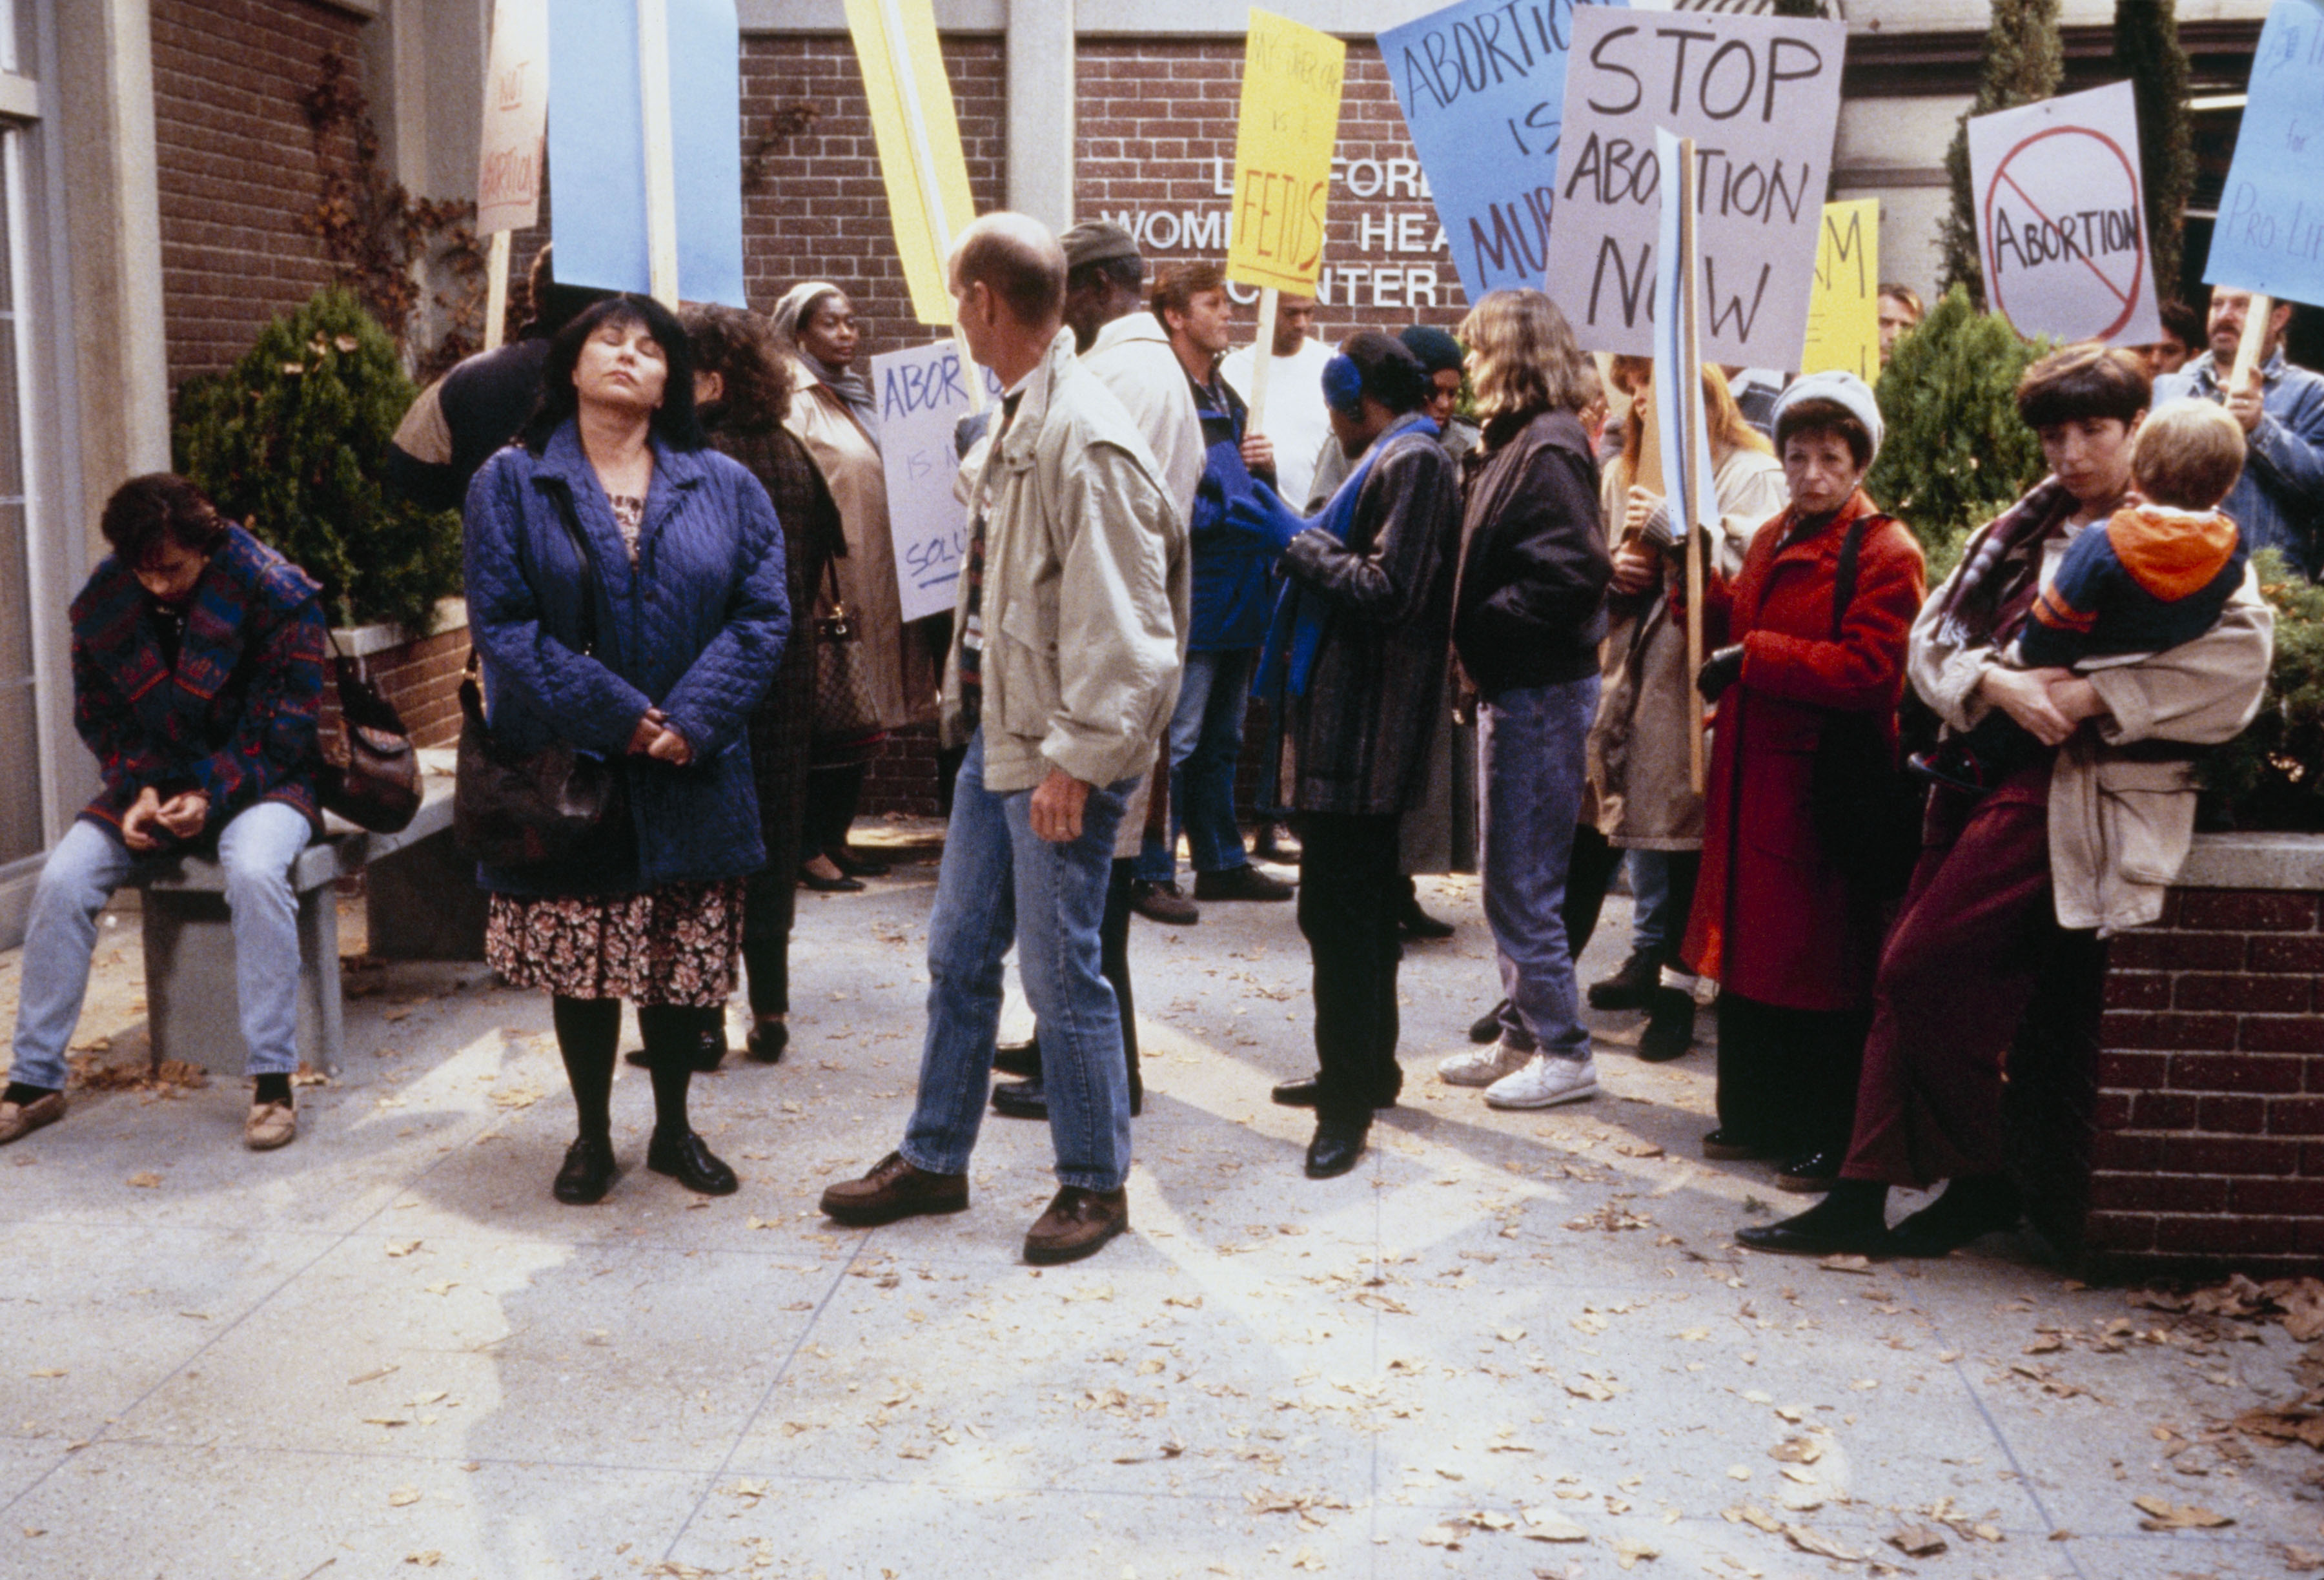 Still of Roseanne Barr in Roseanne (1988)